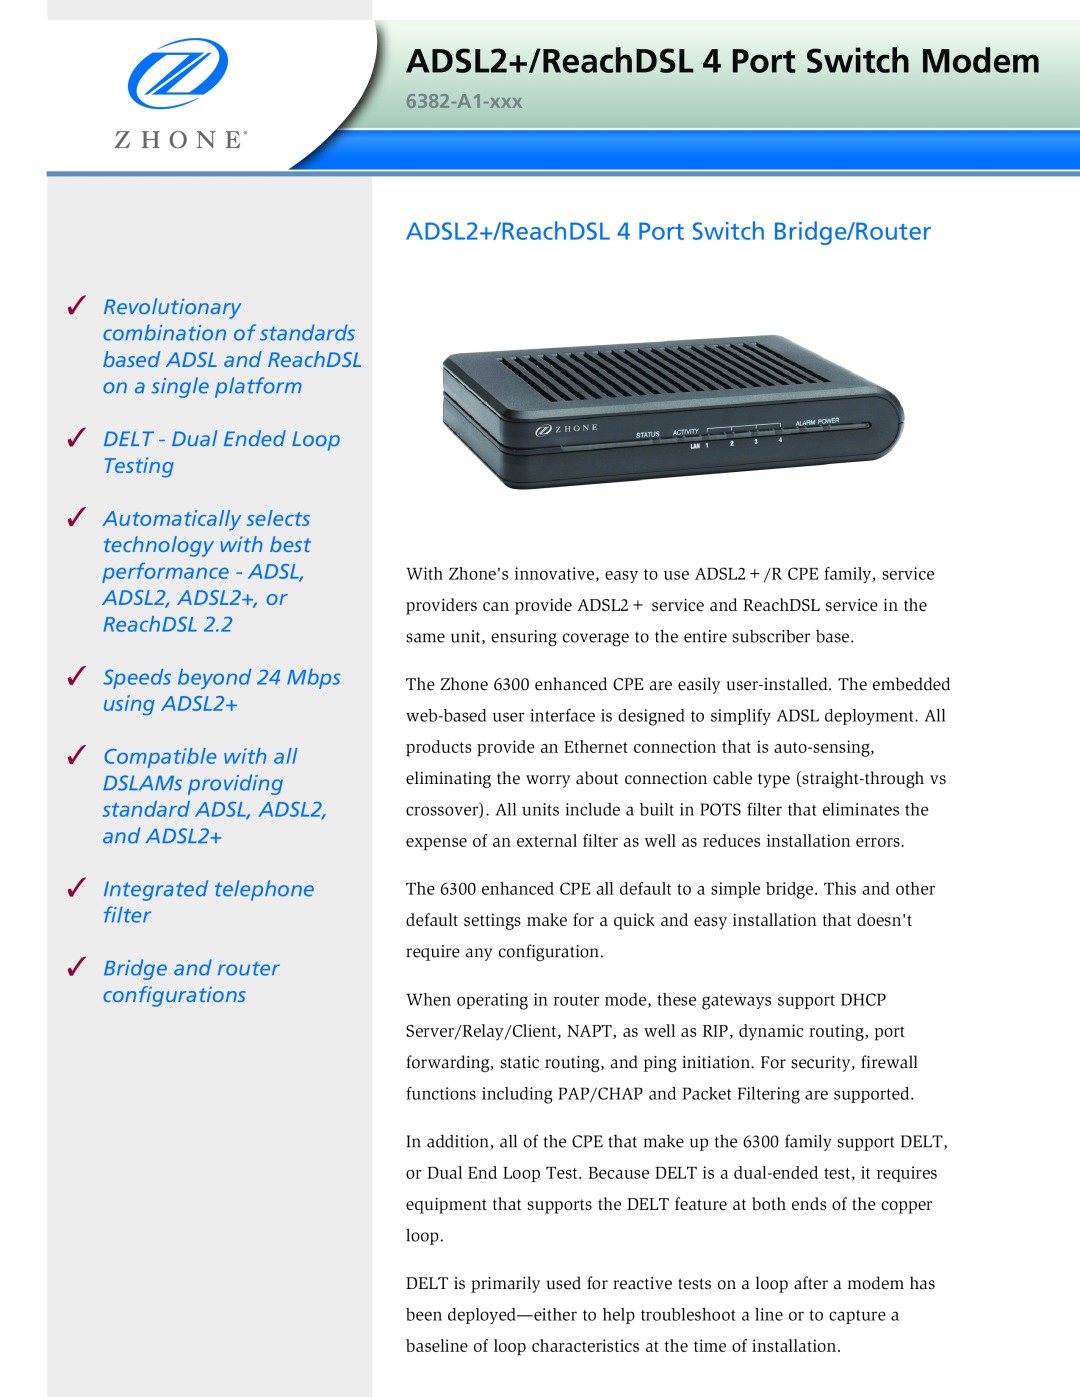 Zhone Technologies 6382-A1-xxx manual ADSL2+/ReachDSL 4 Port Switch Modem, ADSL2+/ReachDSL 4 Port Switch Bridge/Router 